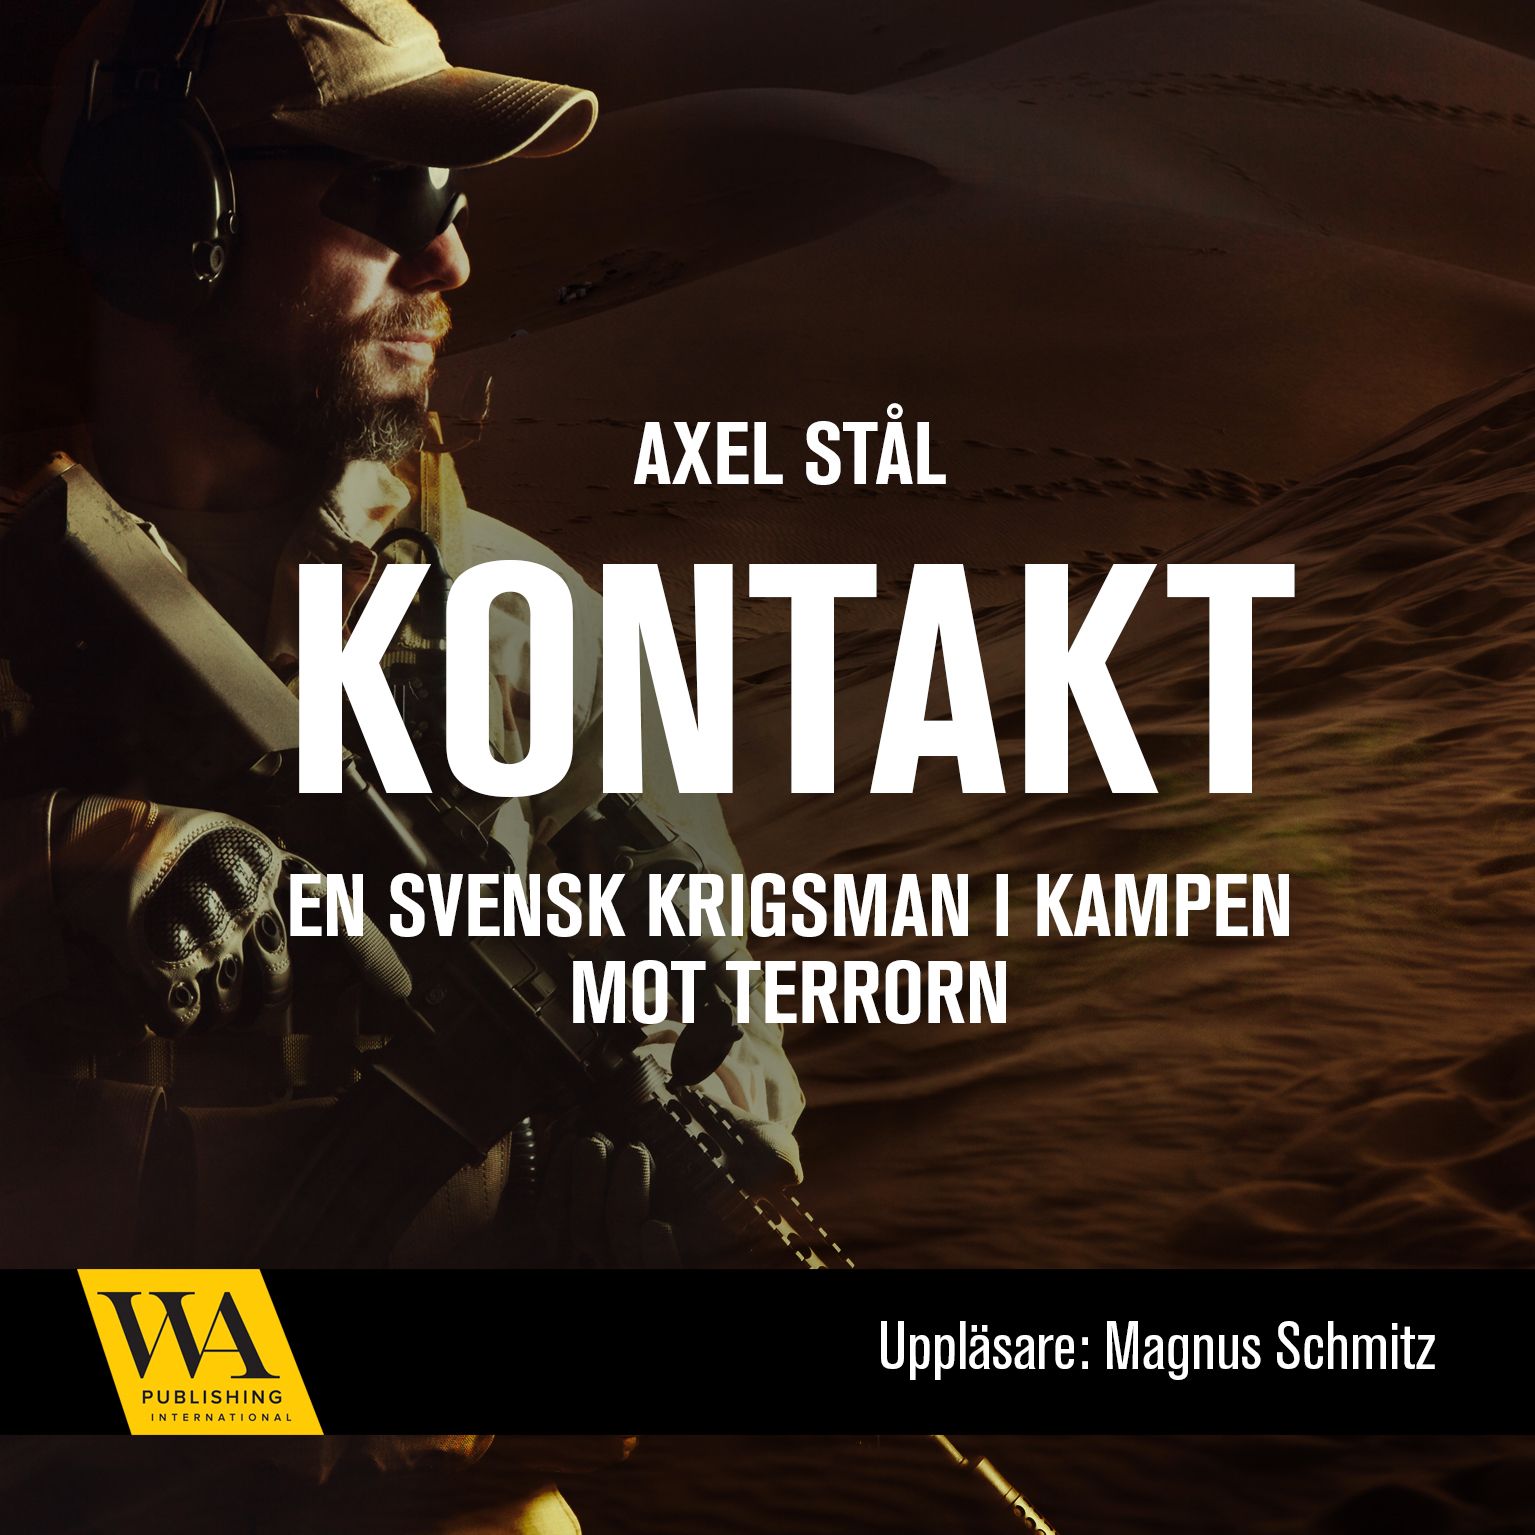 Kontakt: en svensk krigsman i kampen mot terrorn, ljudbok av Axel Stål